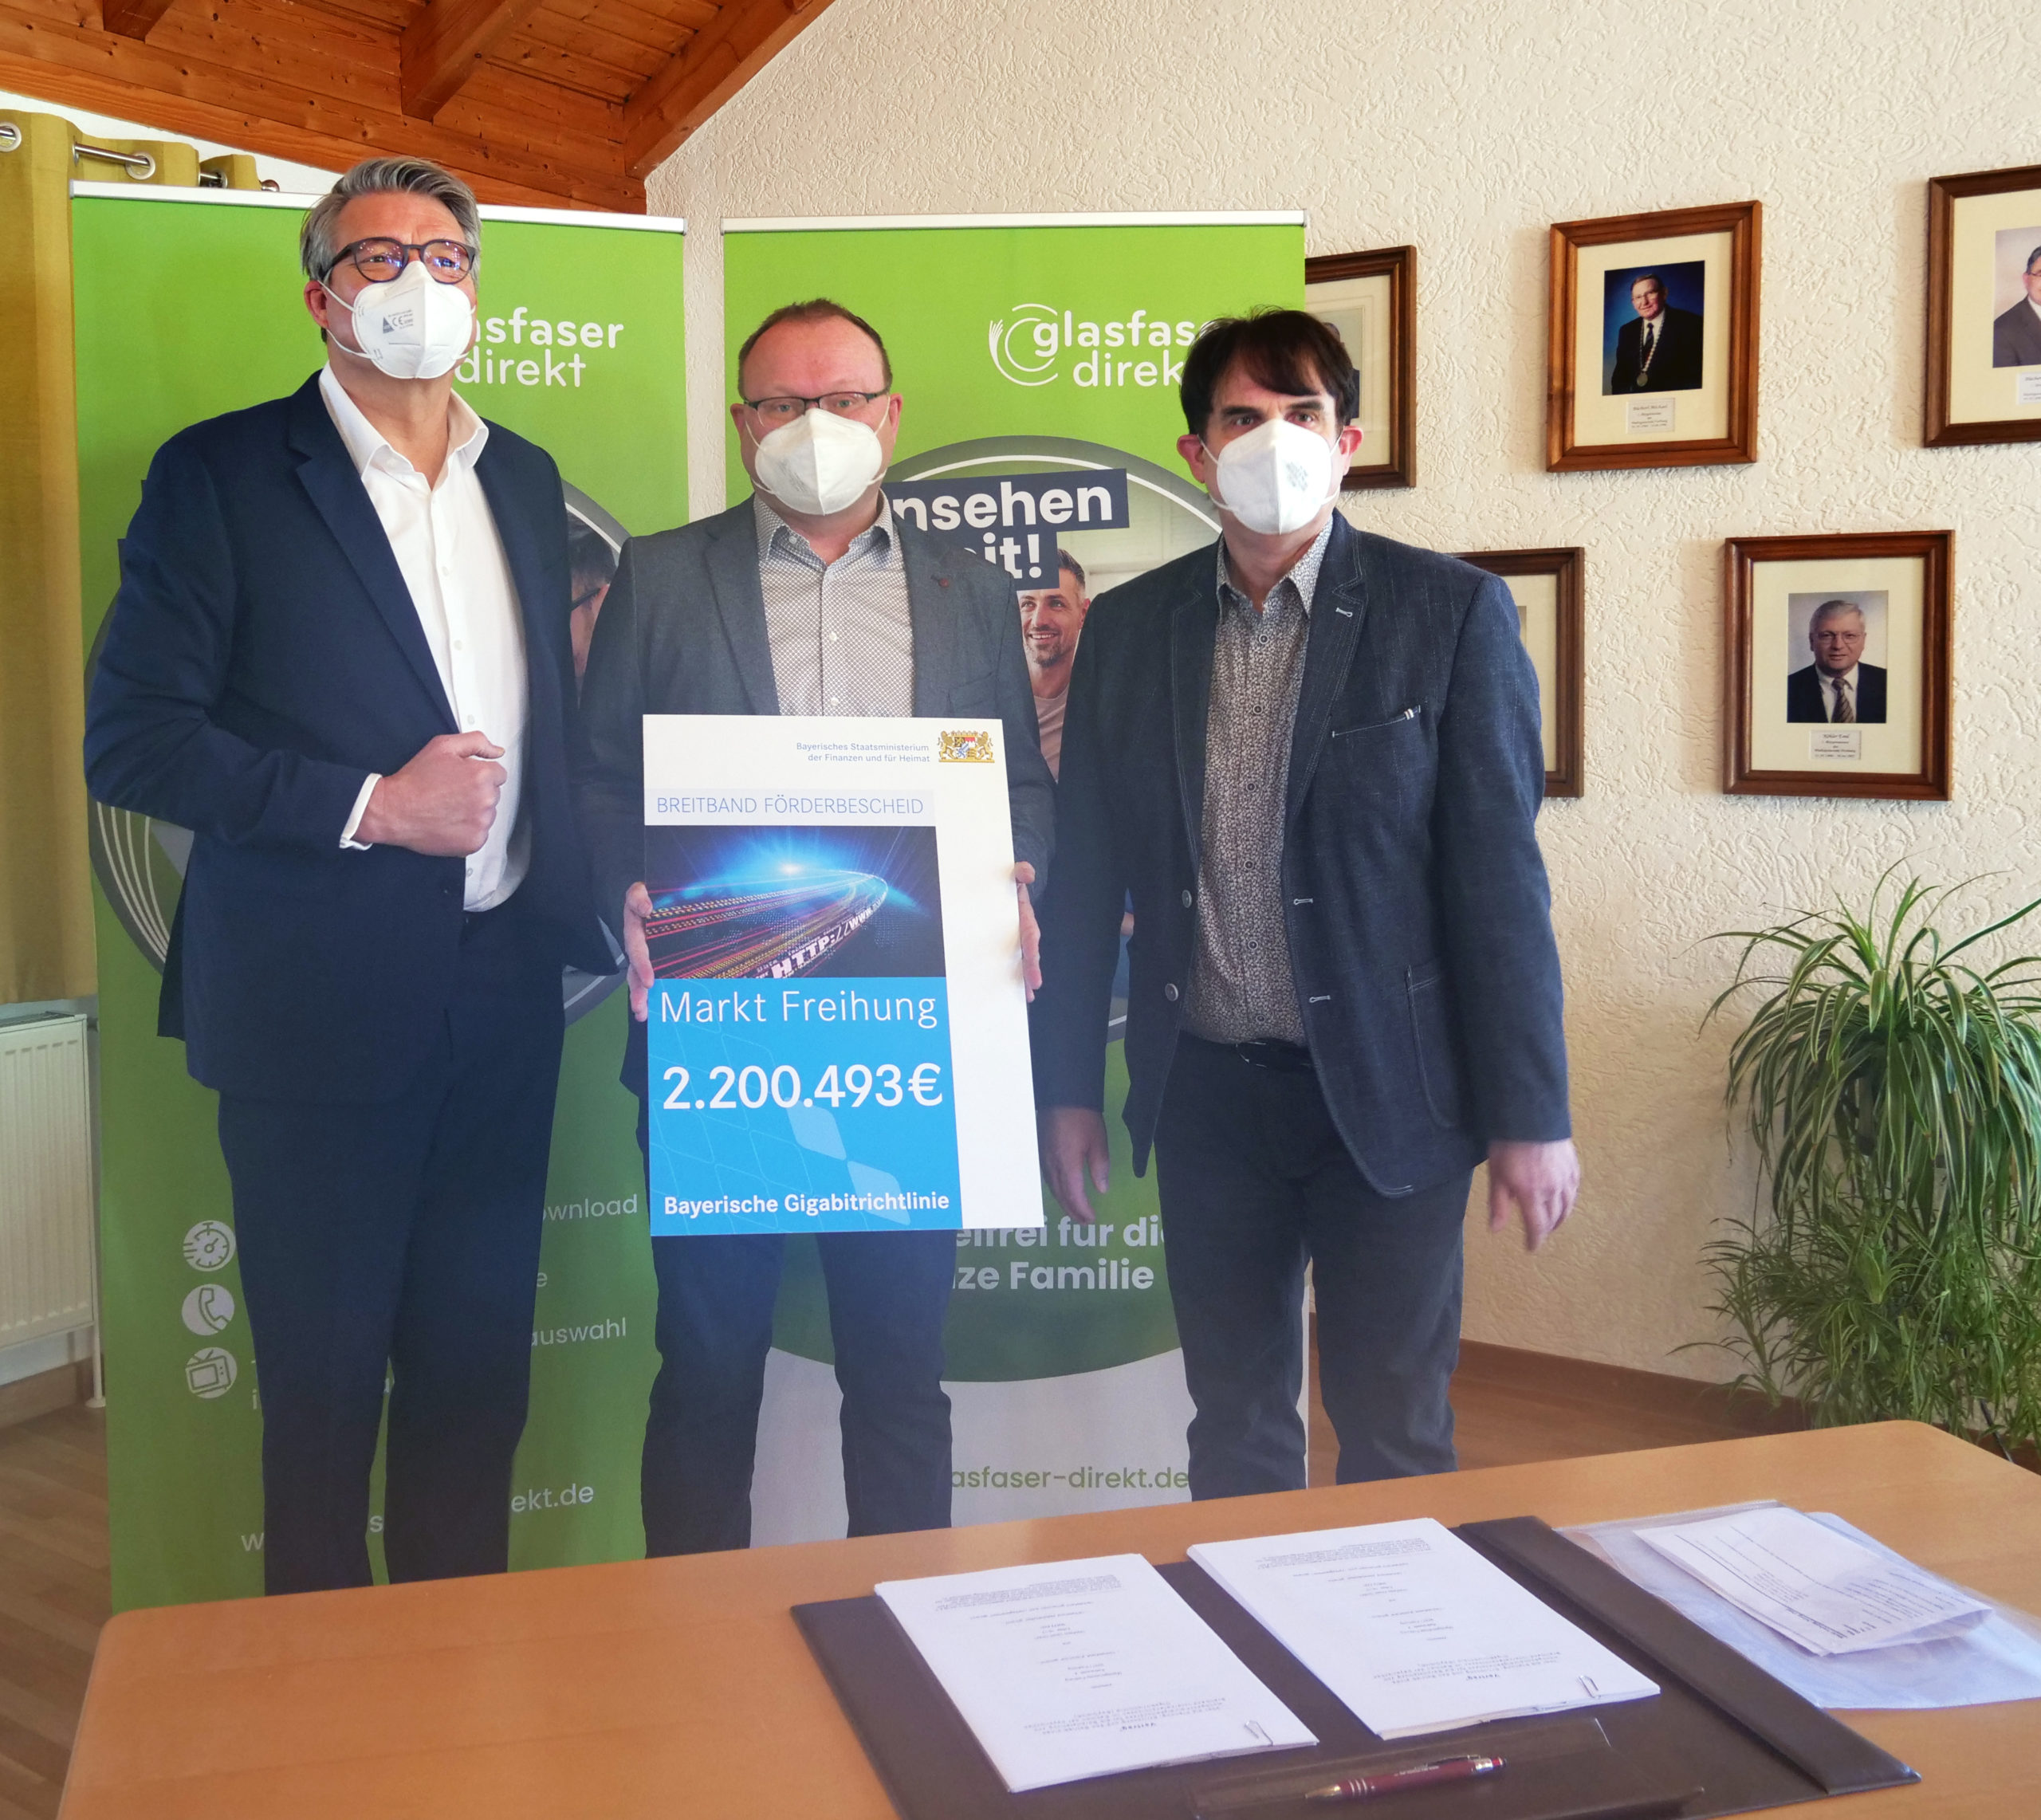 Bürgermeister Uwe König bei der Unterzeichnung des Kooperationsvertrages mit Glasfaser Direkt